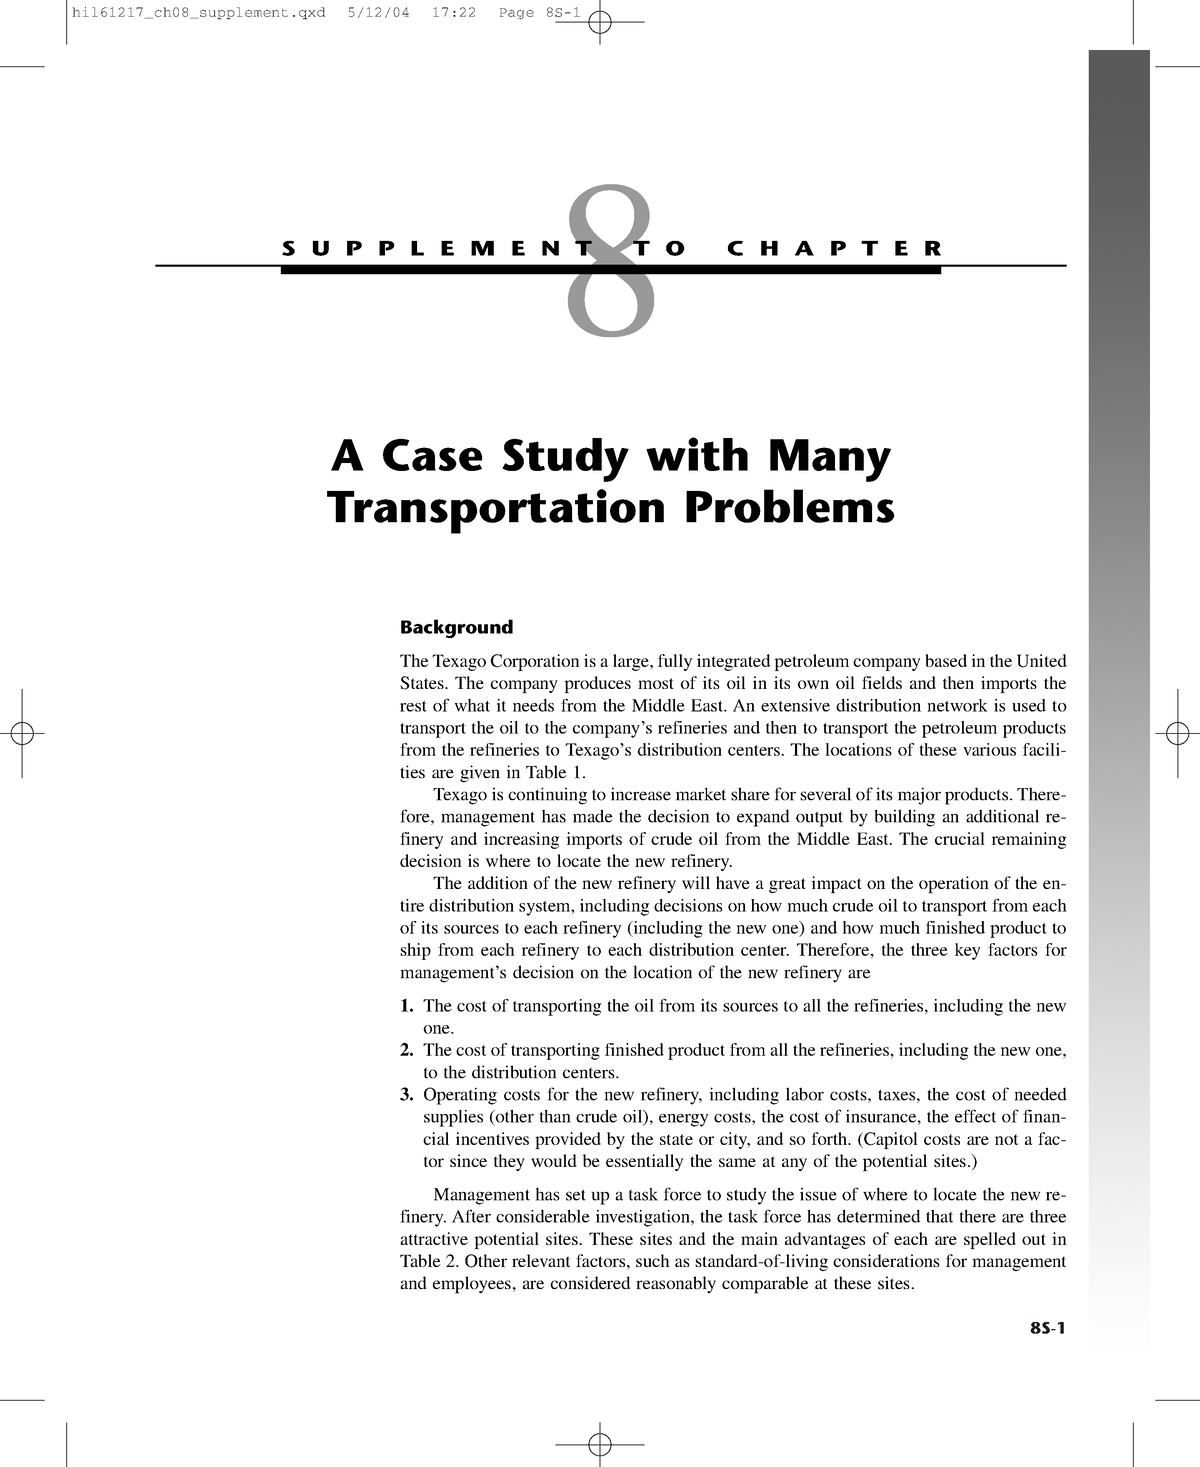 case study on transportation problem